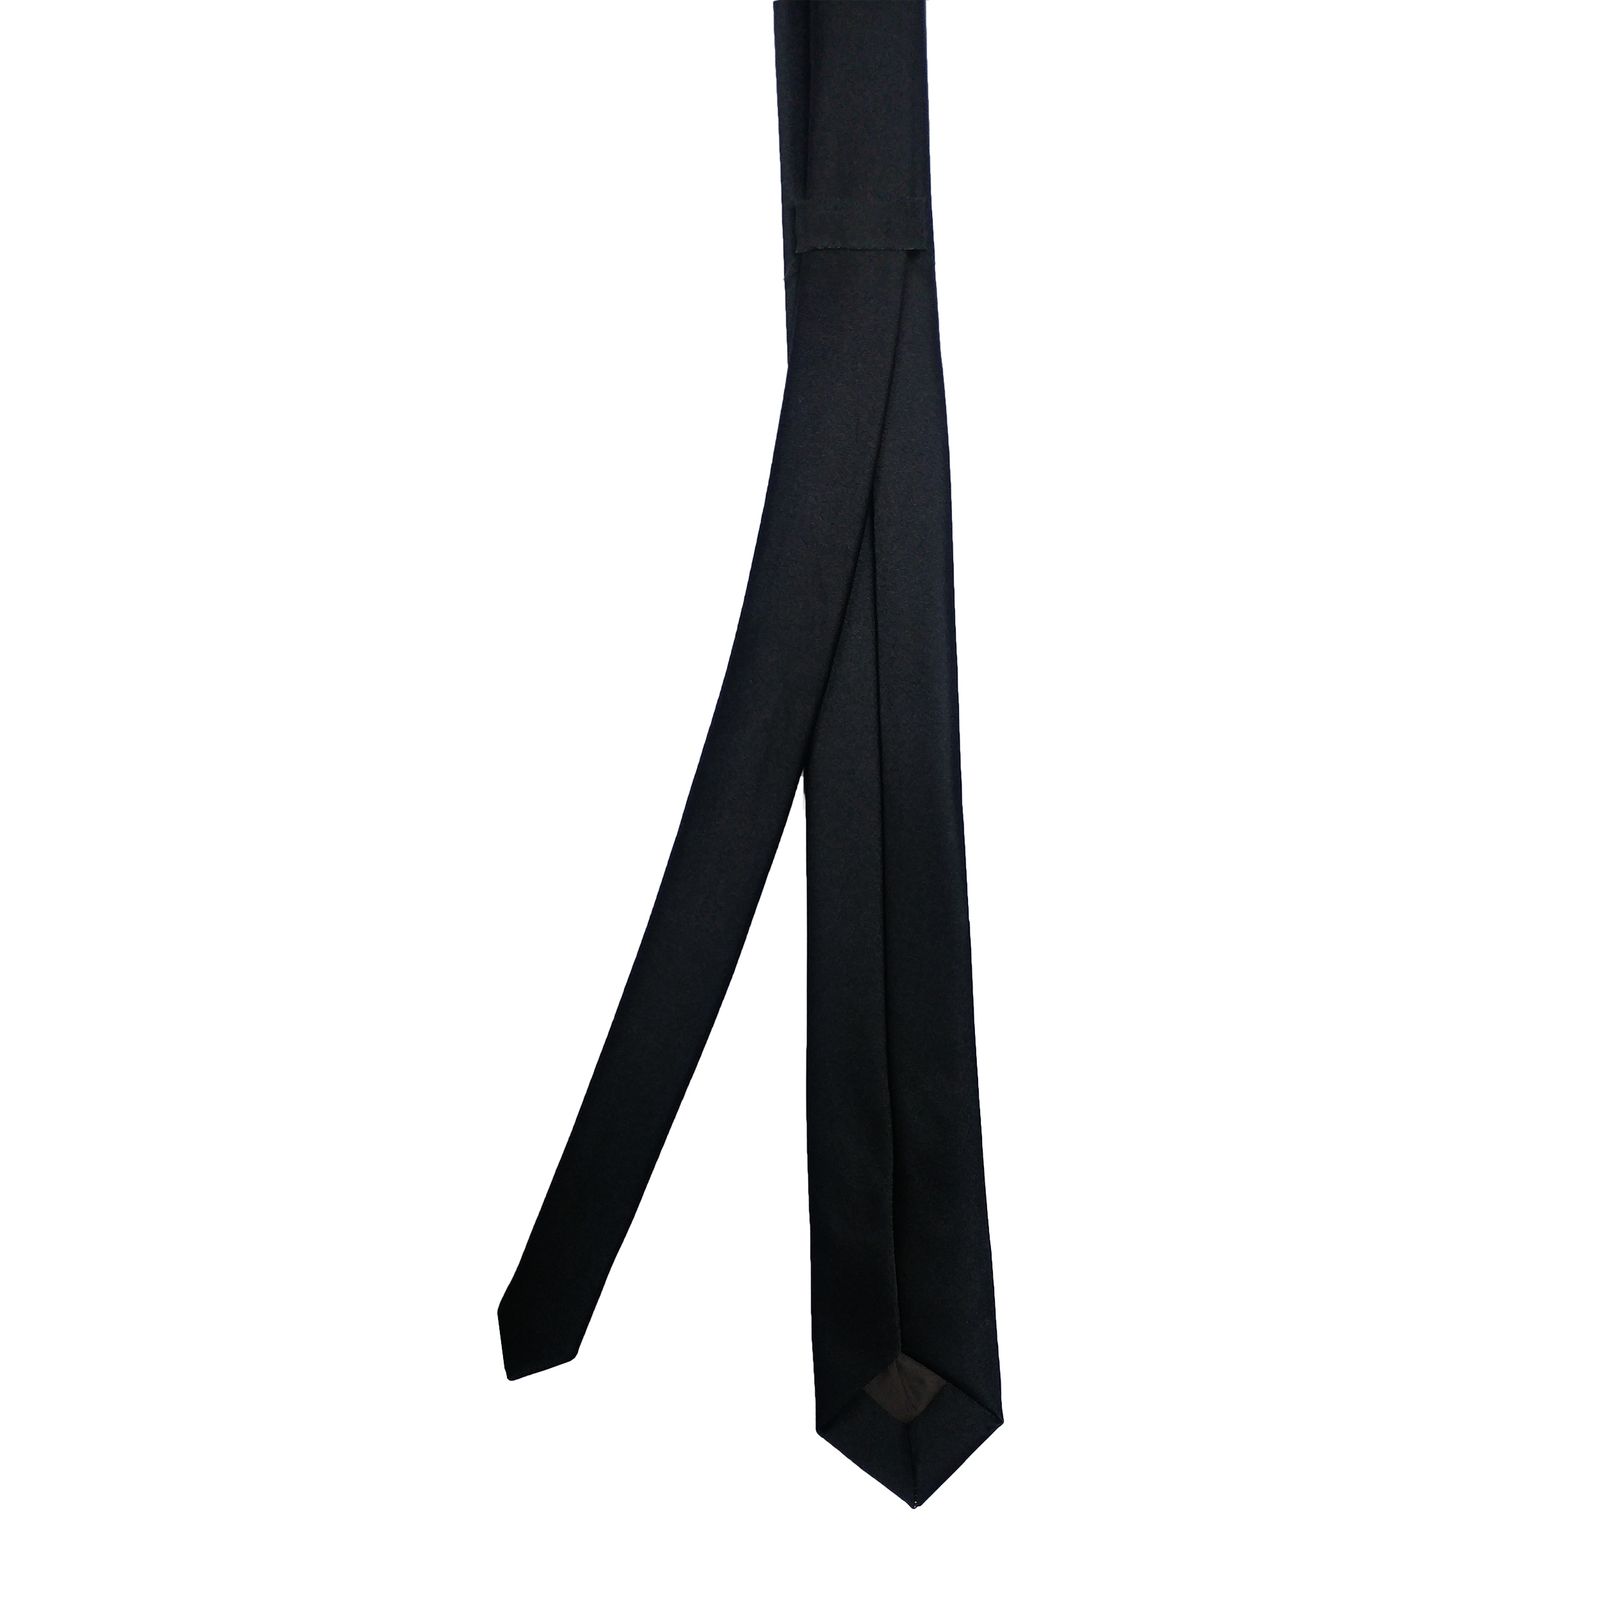 ست کراوات و دستمال جیب مردانه مدل b1 -  - 6